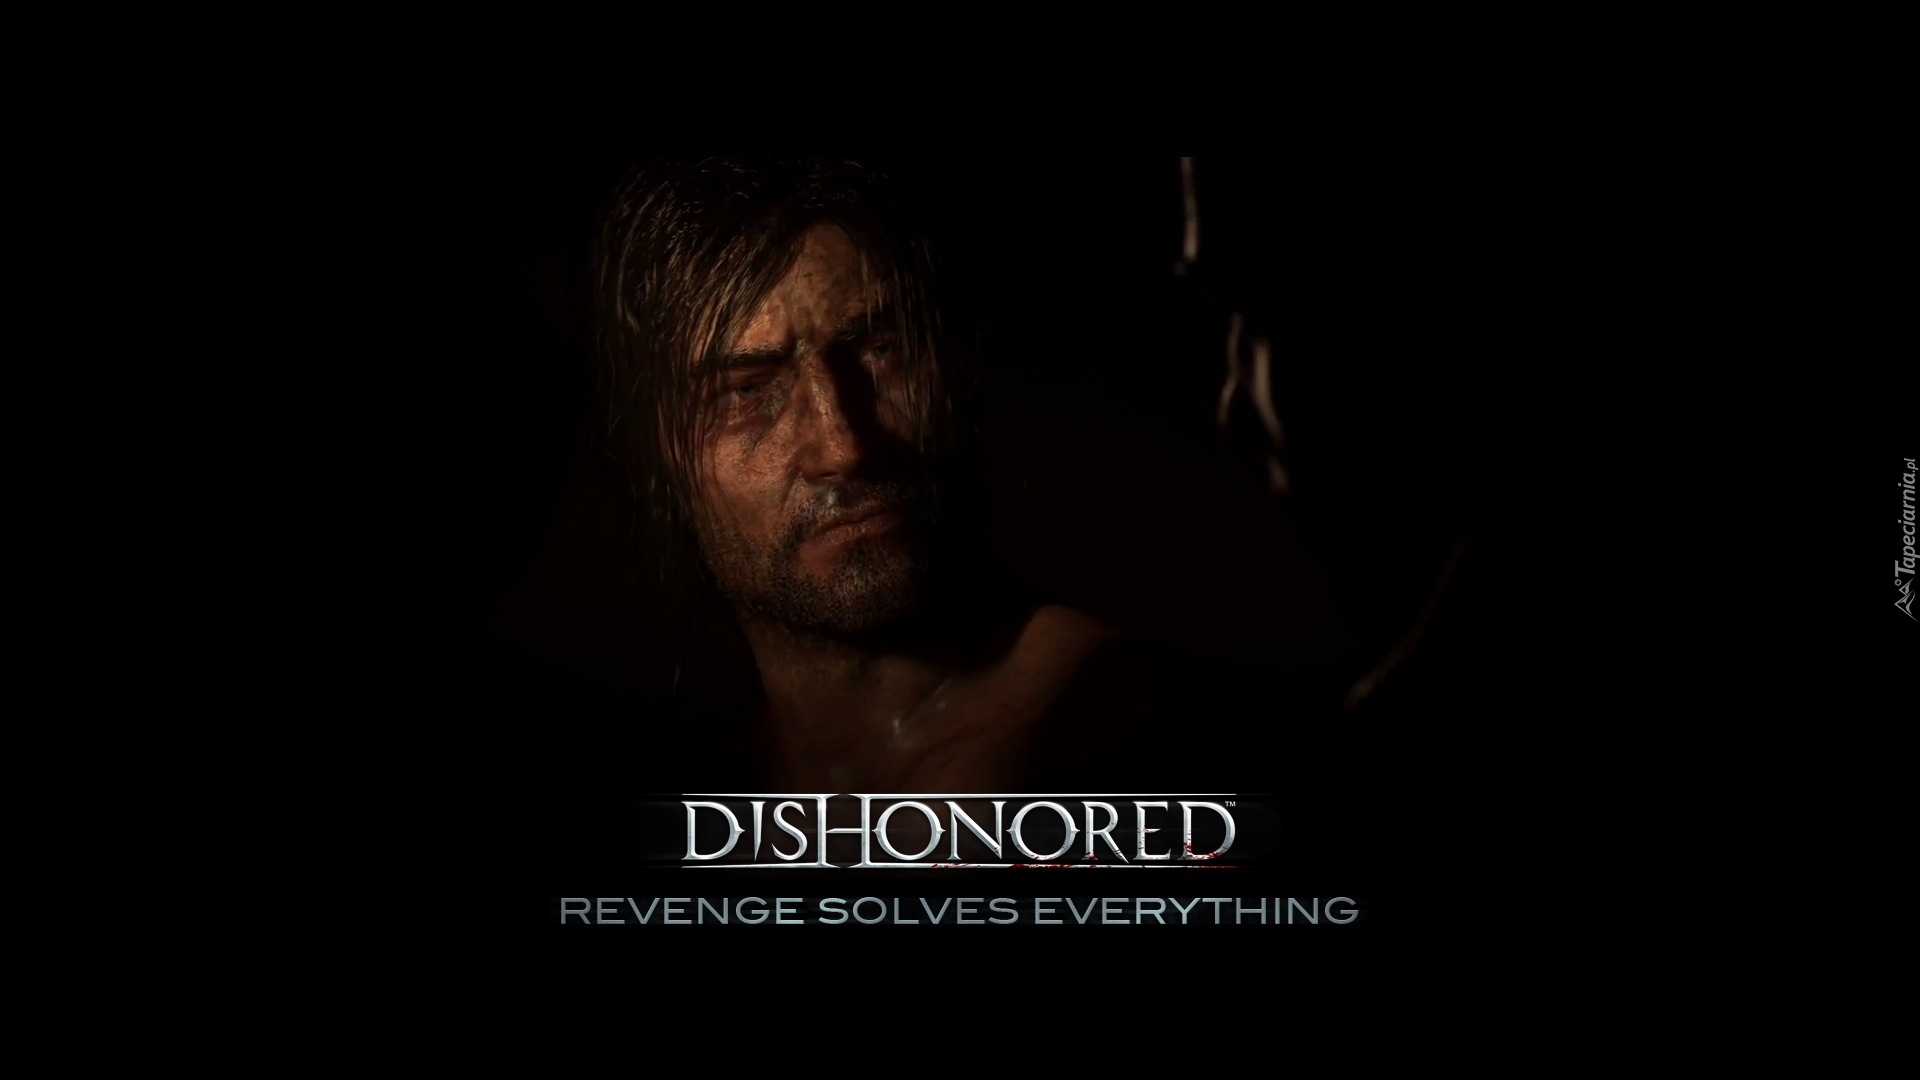 Dishonored, Corvo